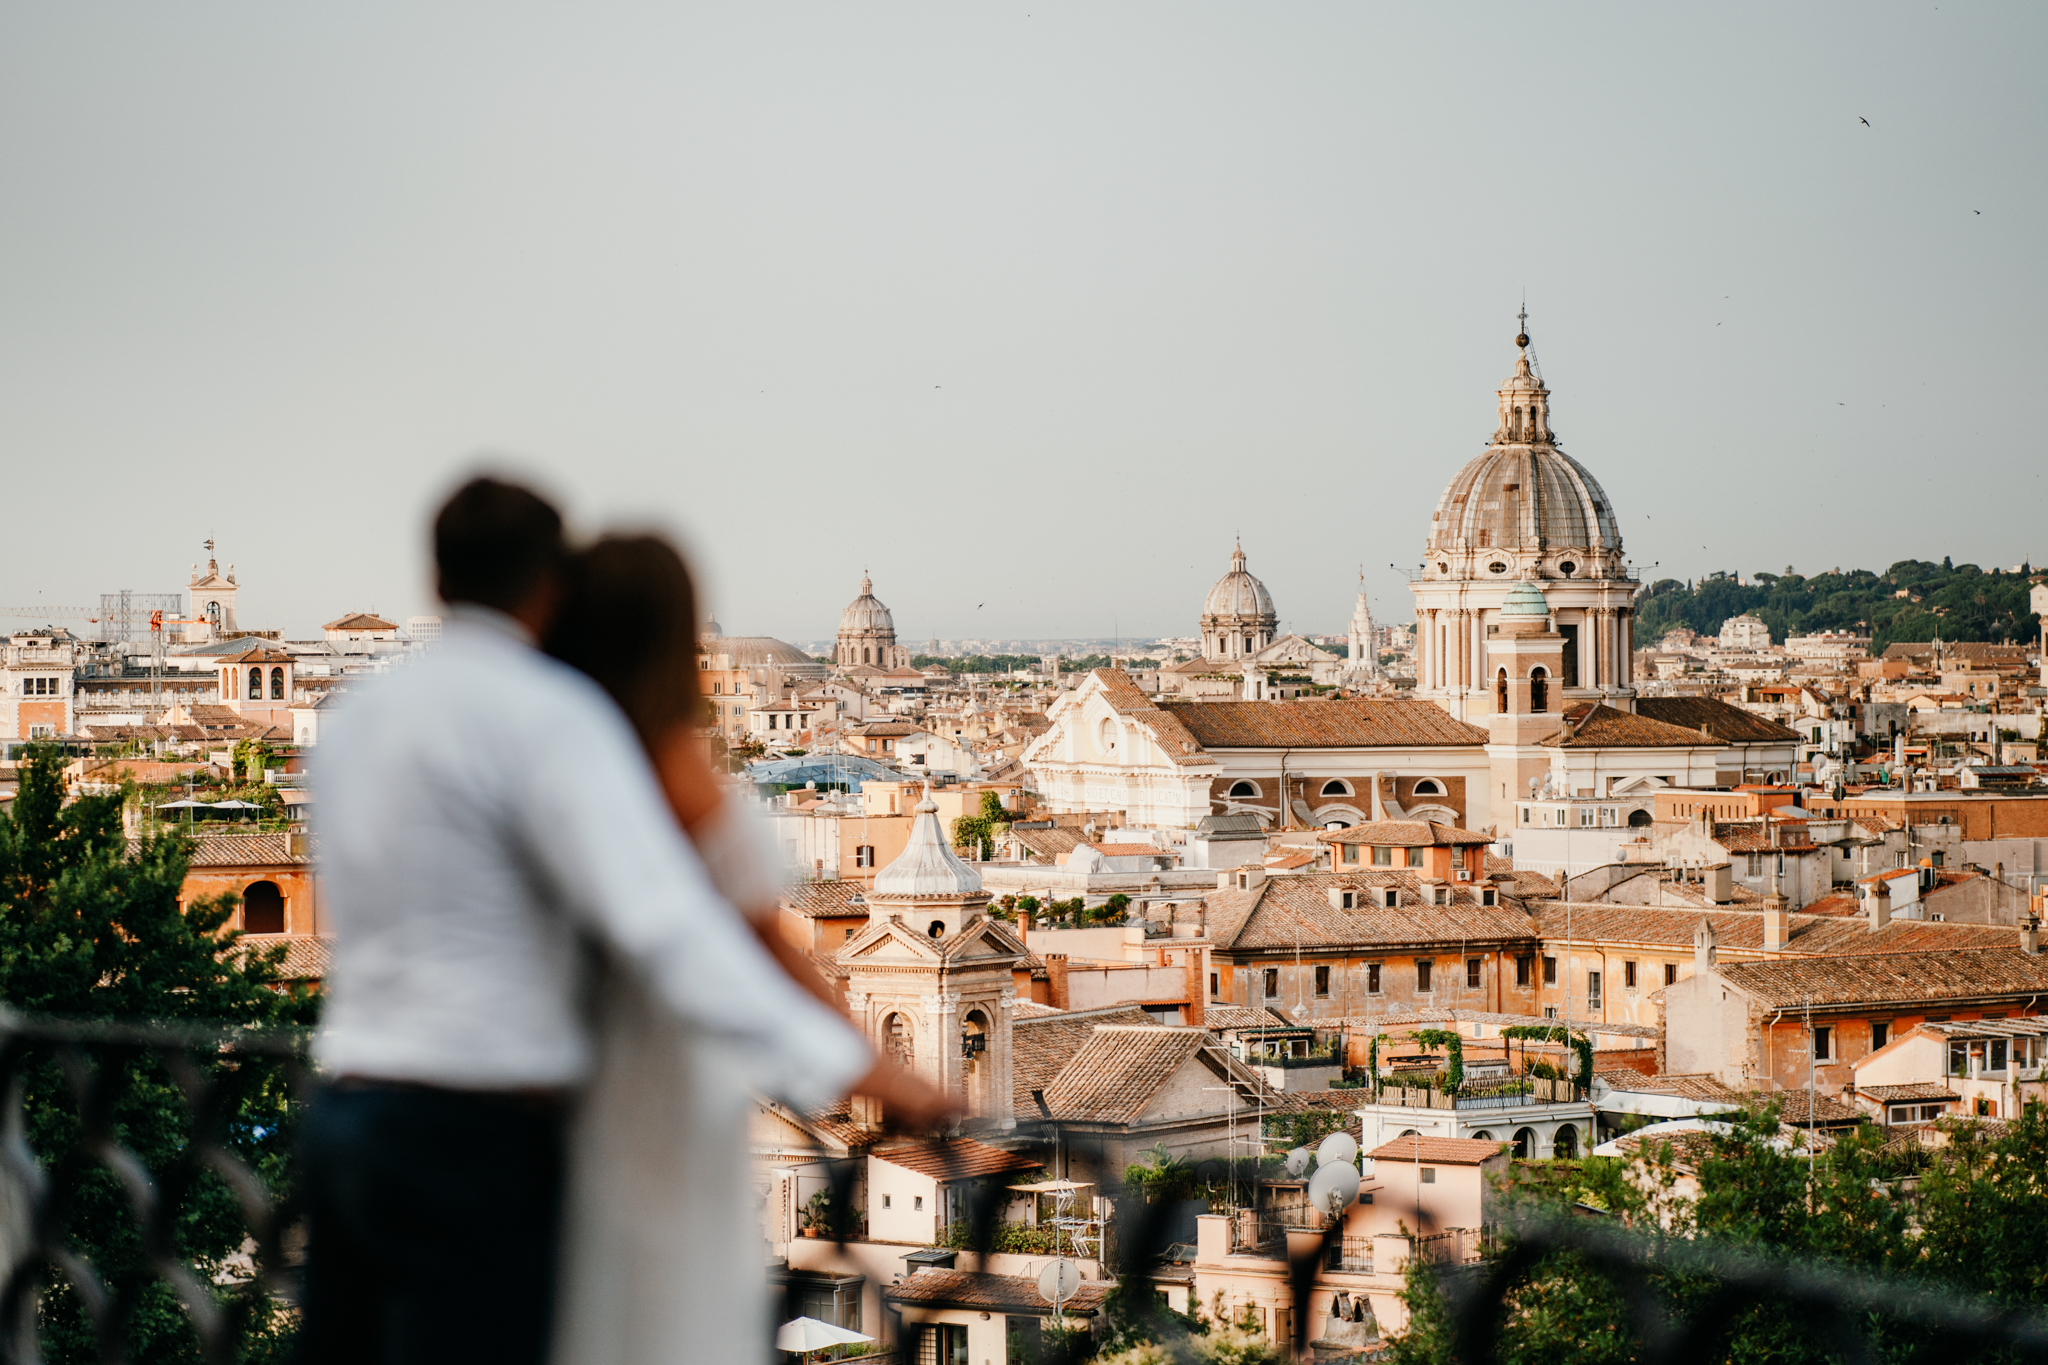 Sesja ślubna w Rzymie